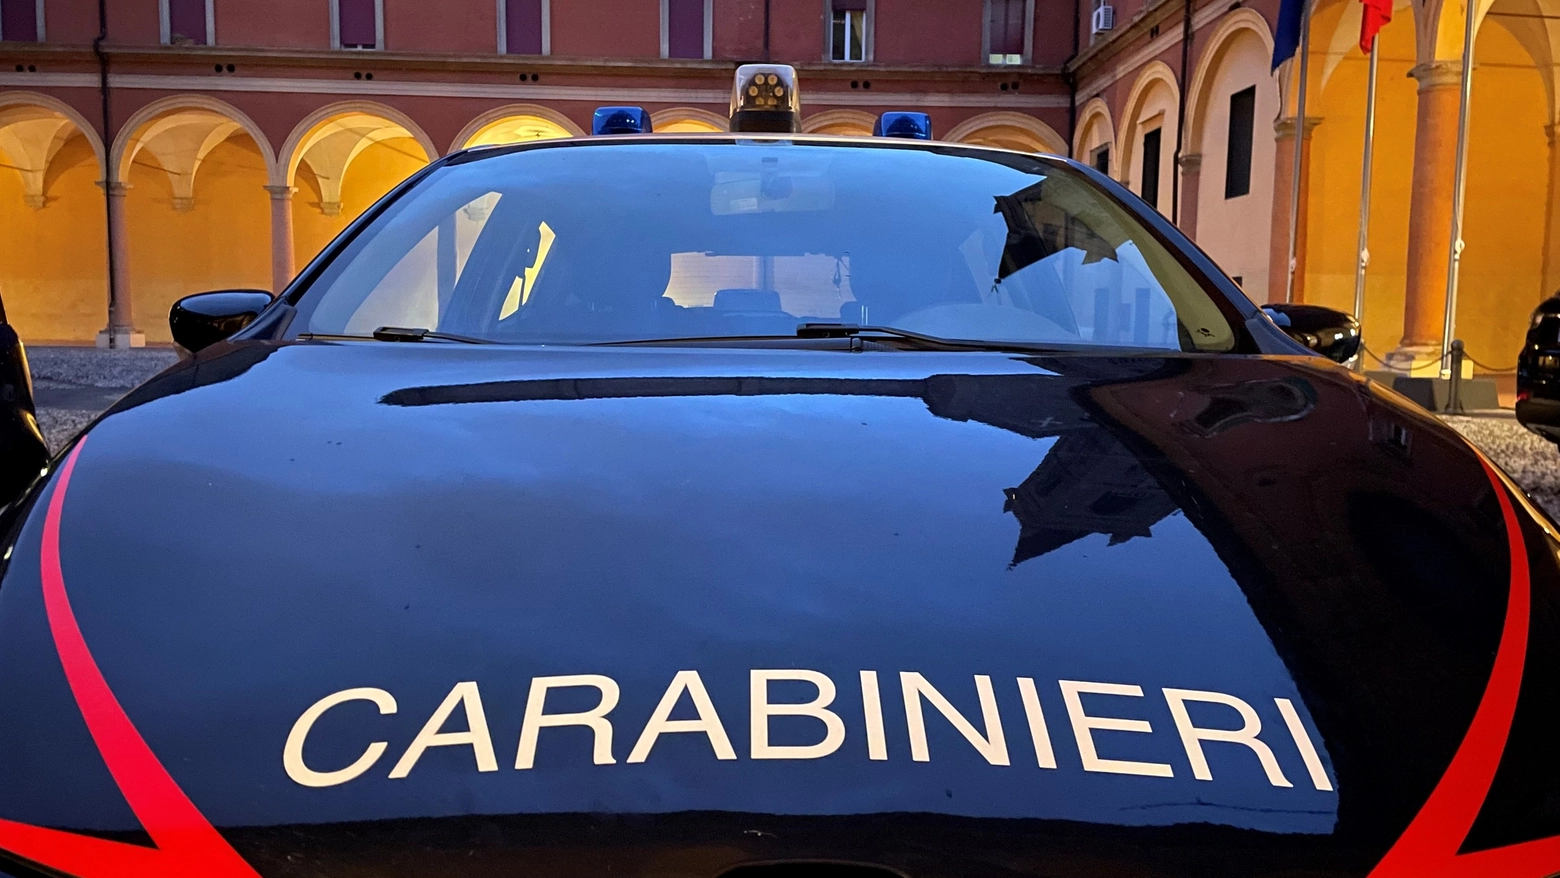 Il comandante dei carabinieri avrebbe scritto sul volto di una sottoposta (foto di repertorio)